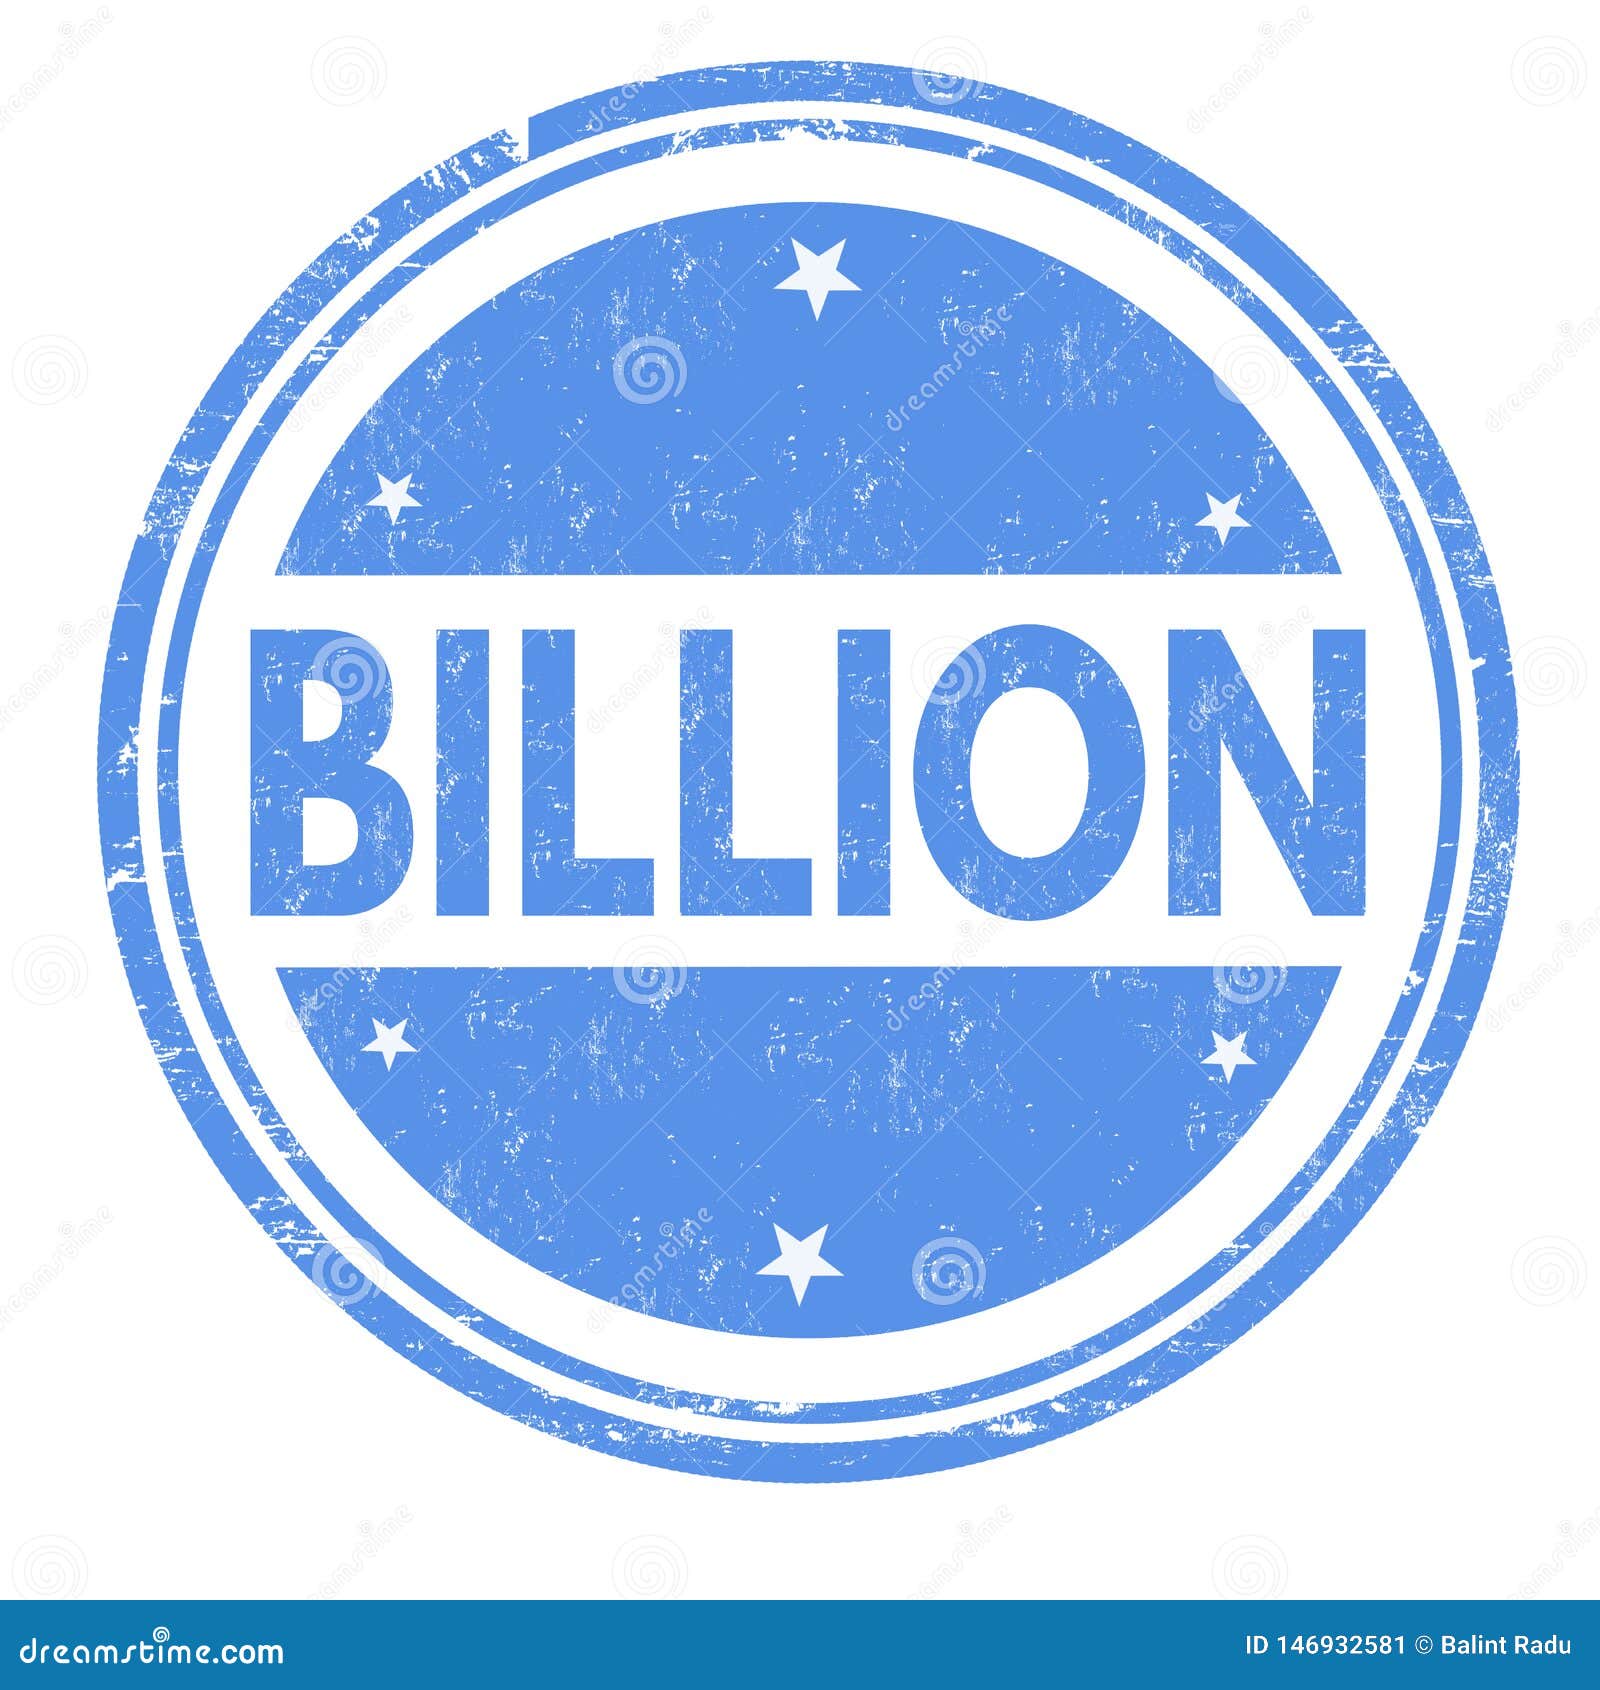 billion sign or stamp